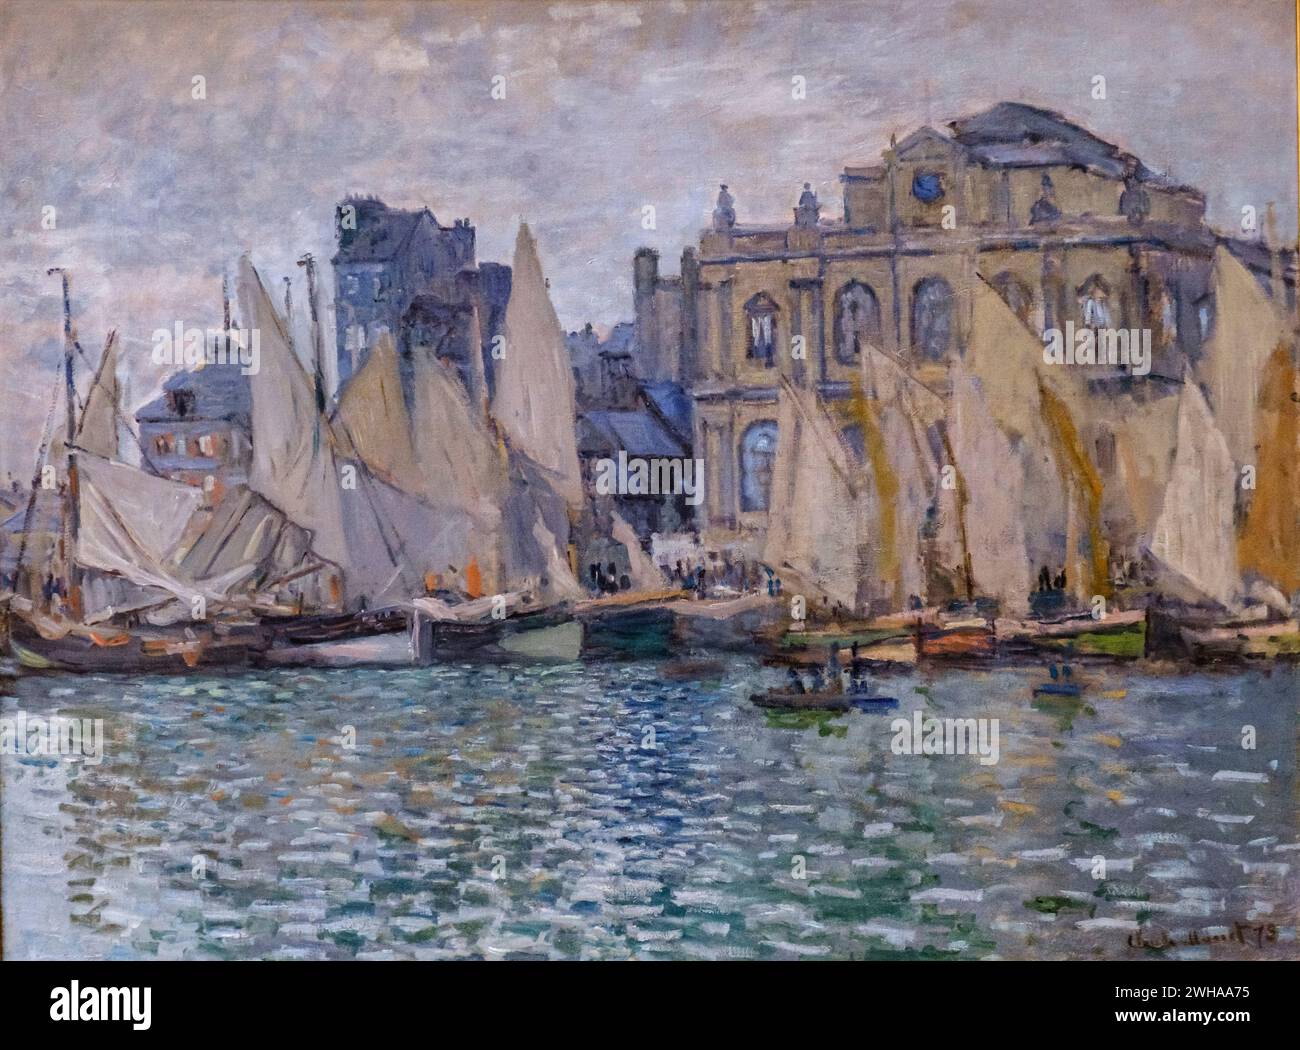 Claude Monet, le Musée du Havre, 1873, huile sur toile, Galerie nationale, Londres, Angleterre, Grande-Bretagne Banque D'Images